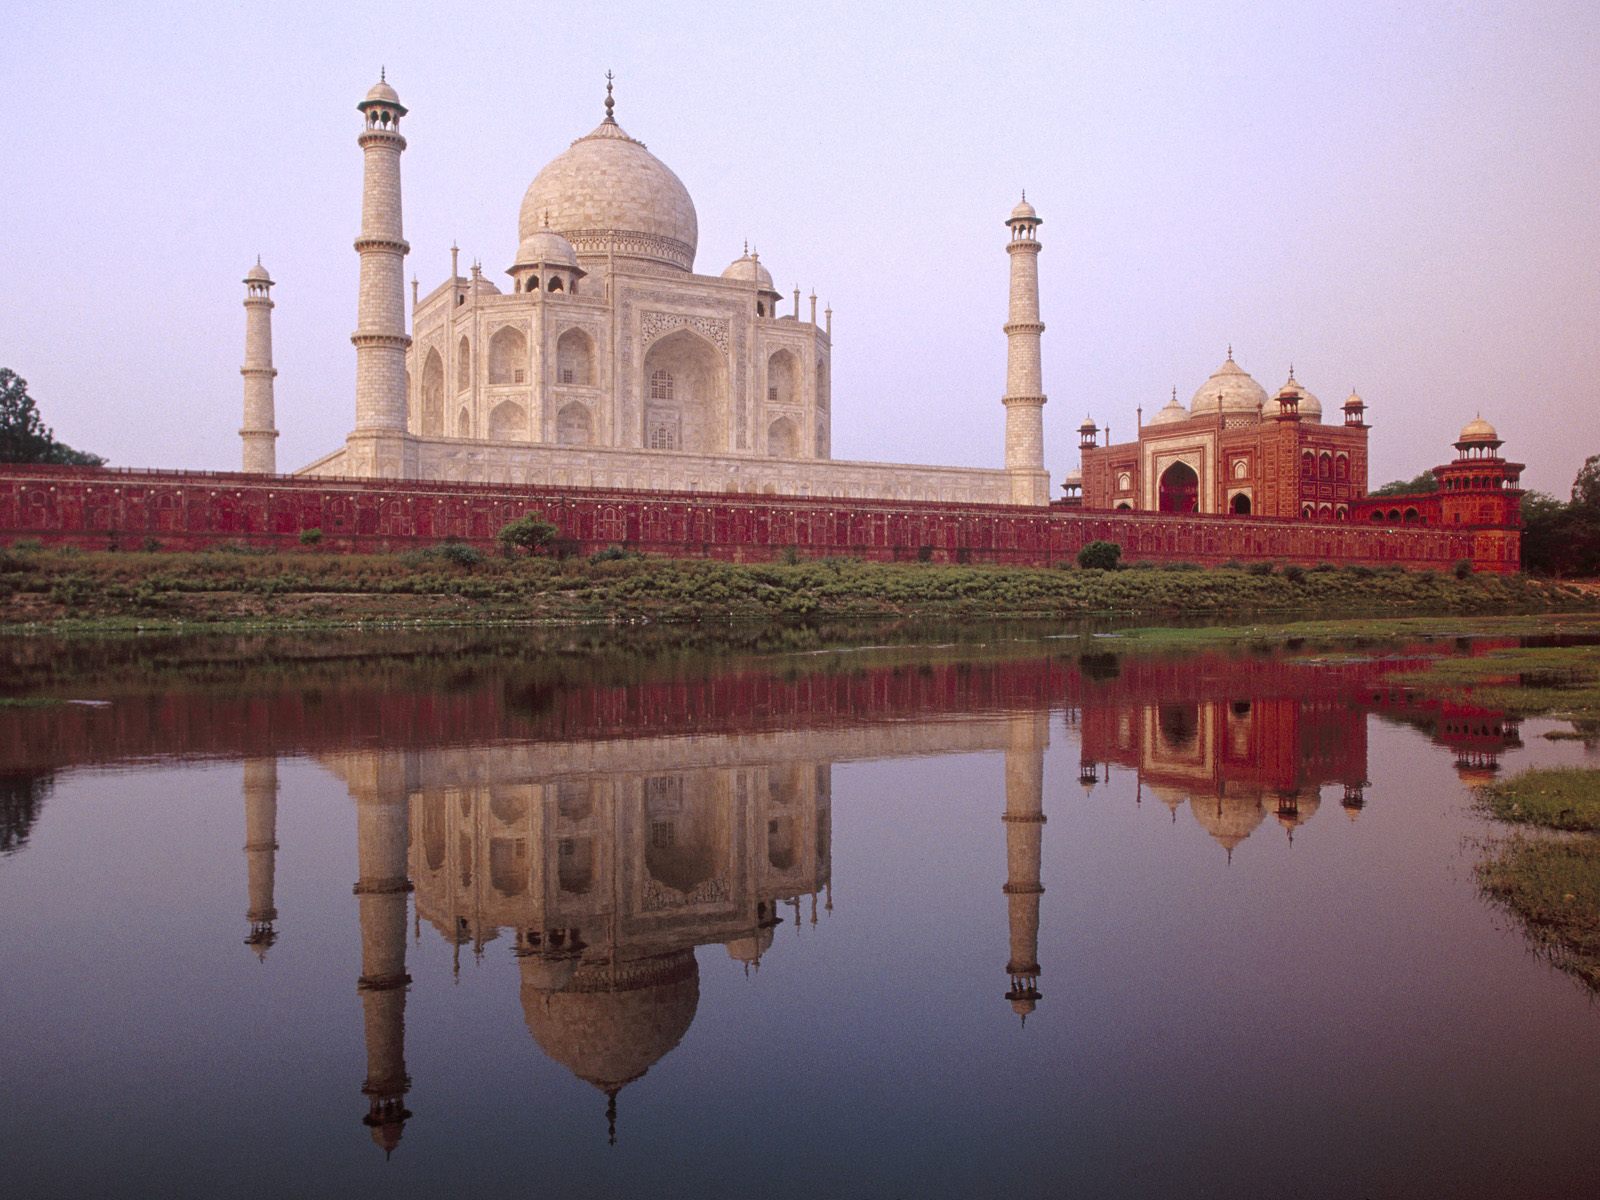 壁纸1600x1200文化之旅 地理人文景观壁纸精选 第一辑 Taj Mahal Agra Uttar Pradesh India 印度阿格拉 泰姬陵图片壁纸壁纸 文化之旅地理人文景观(一)壁纸 文化之旅地理人文景观(一)图片 文化之旅地理人文景观(一)素材 人文壁纸 人文图库 人文图片素材桌面壁纸